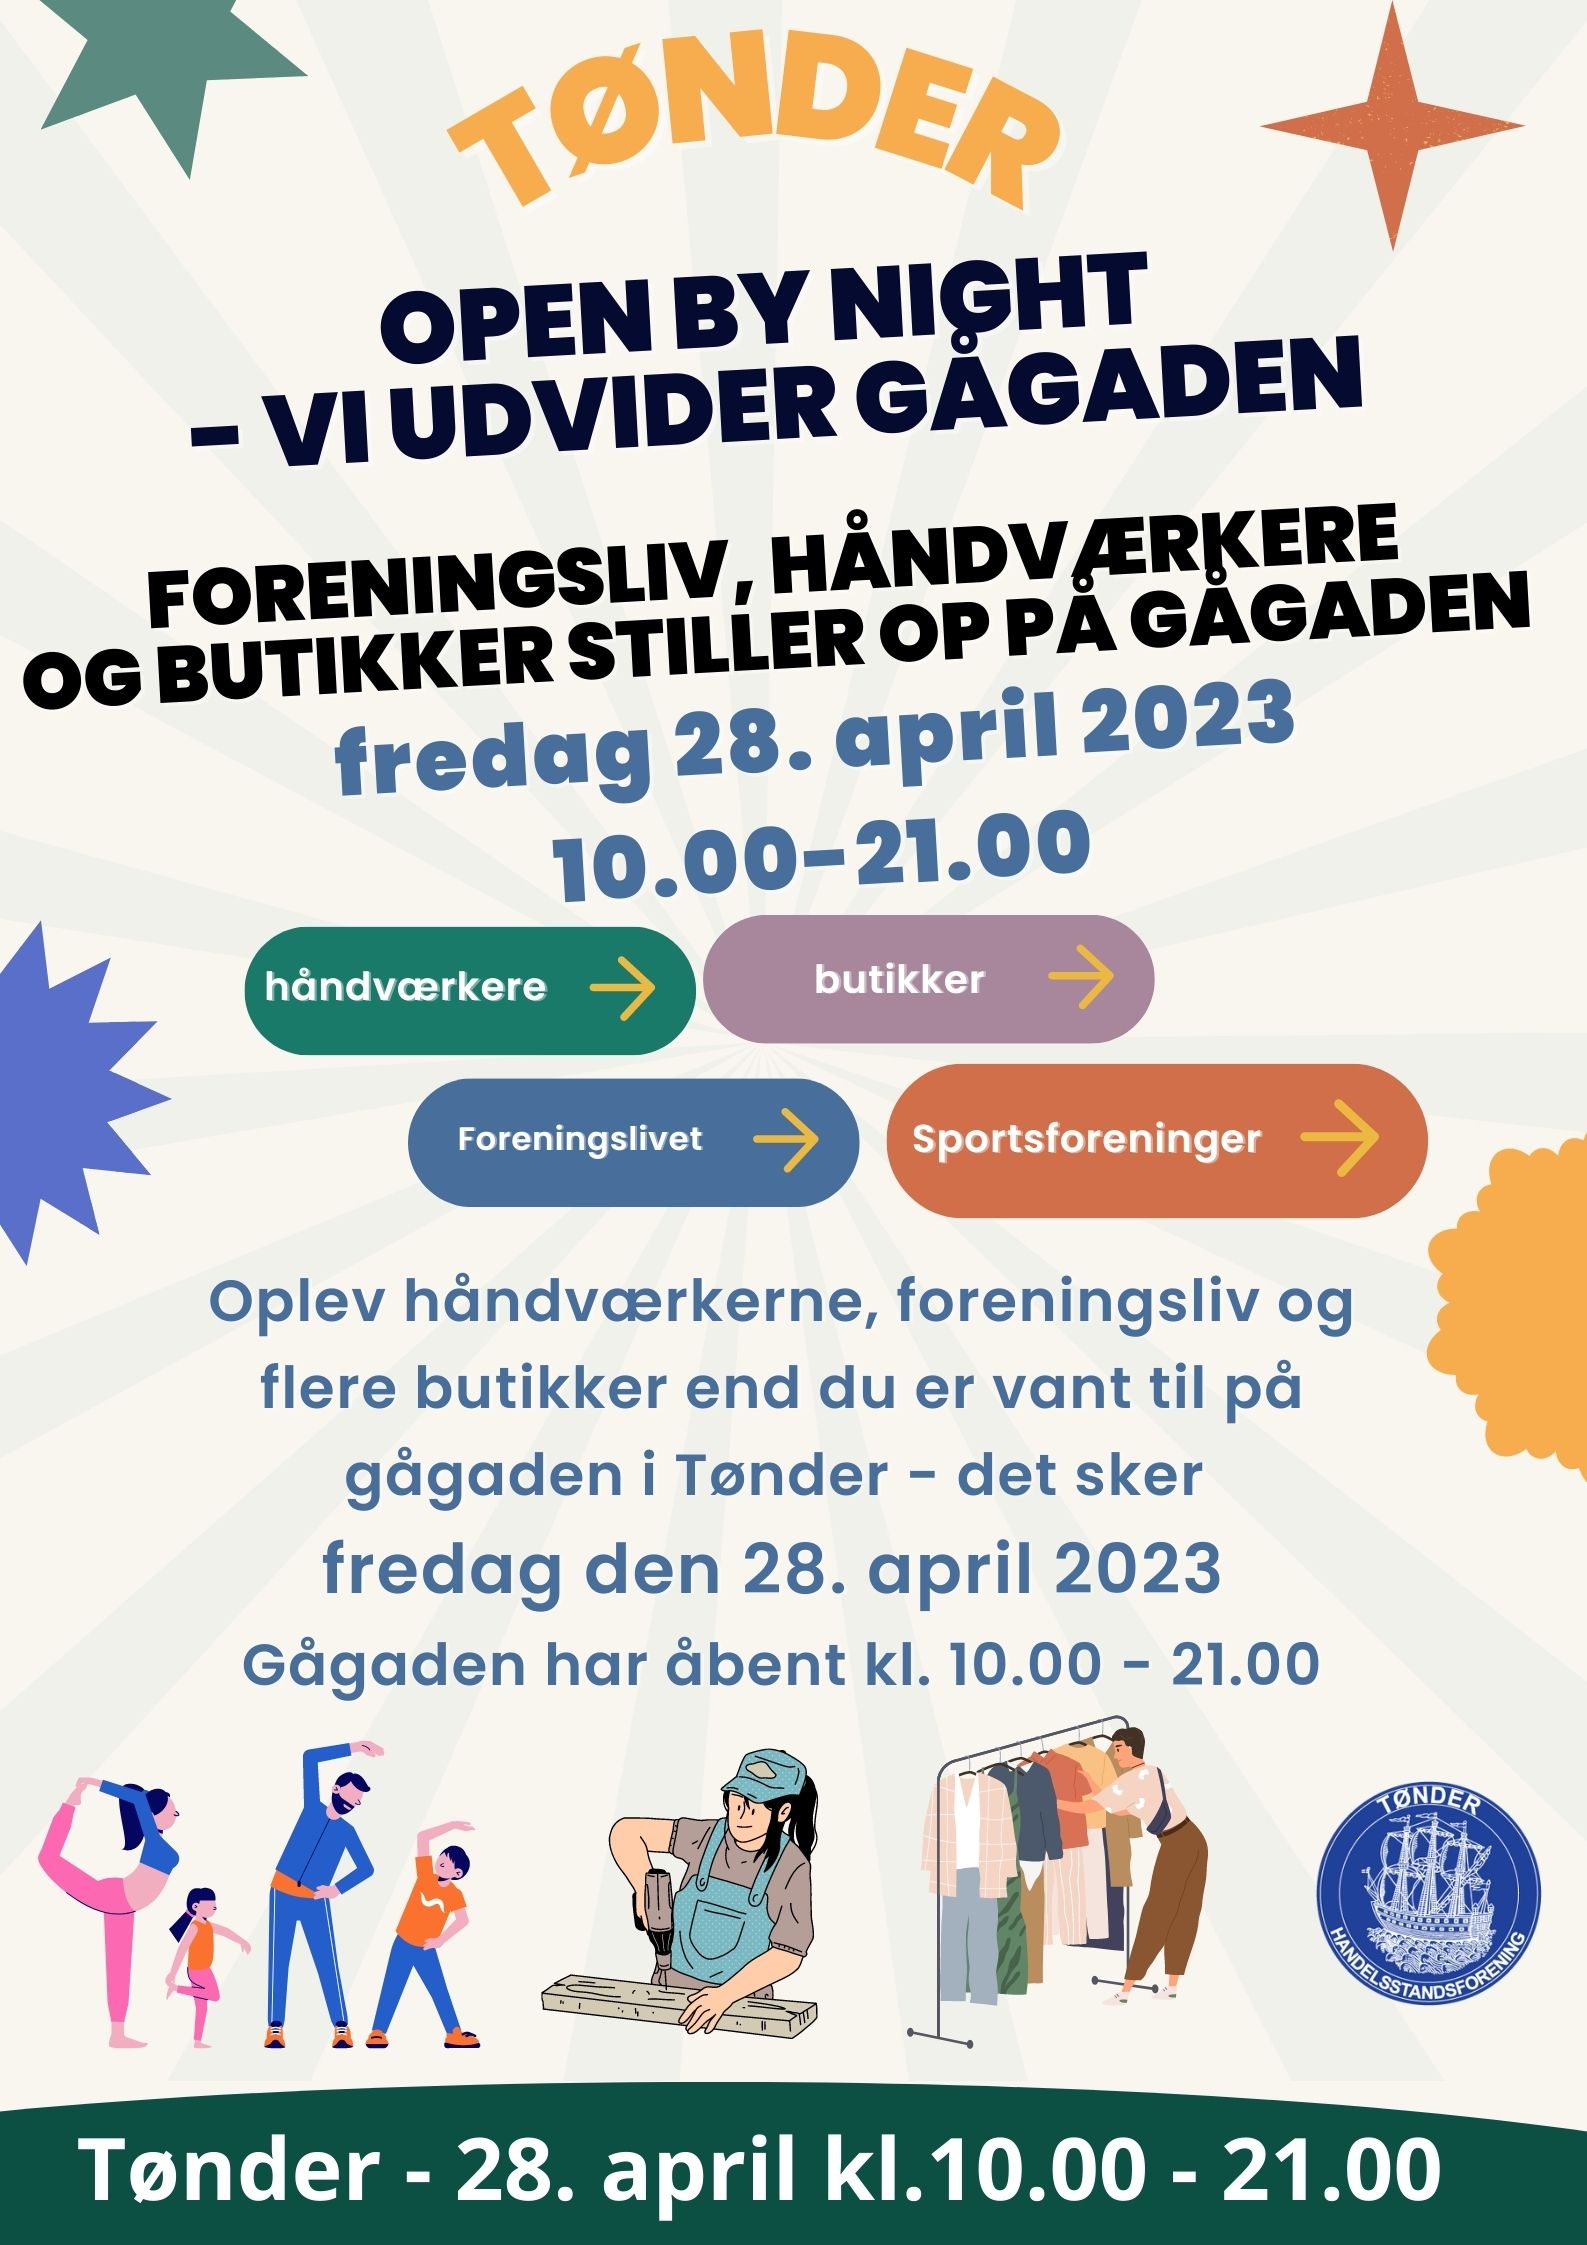 Open By Night – Tønder udvider gågaden fredag den 28. april